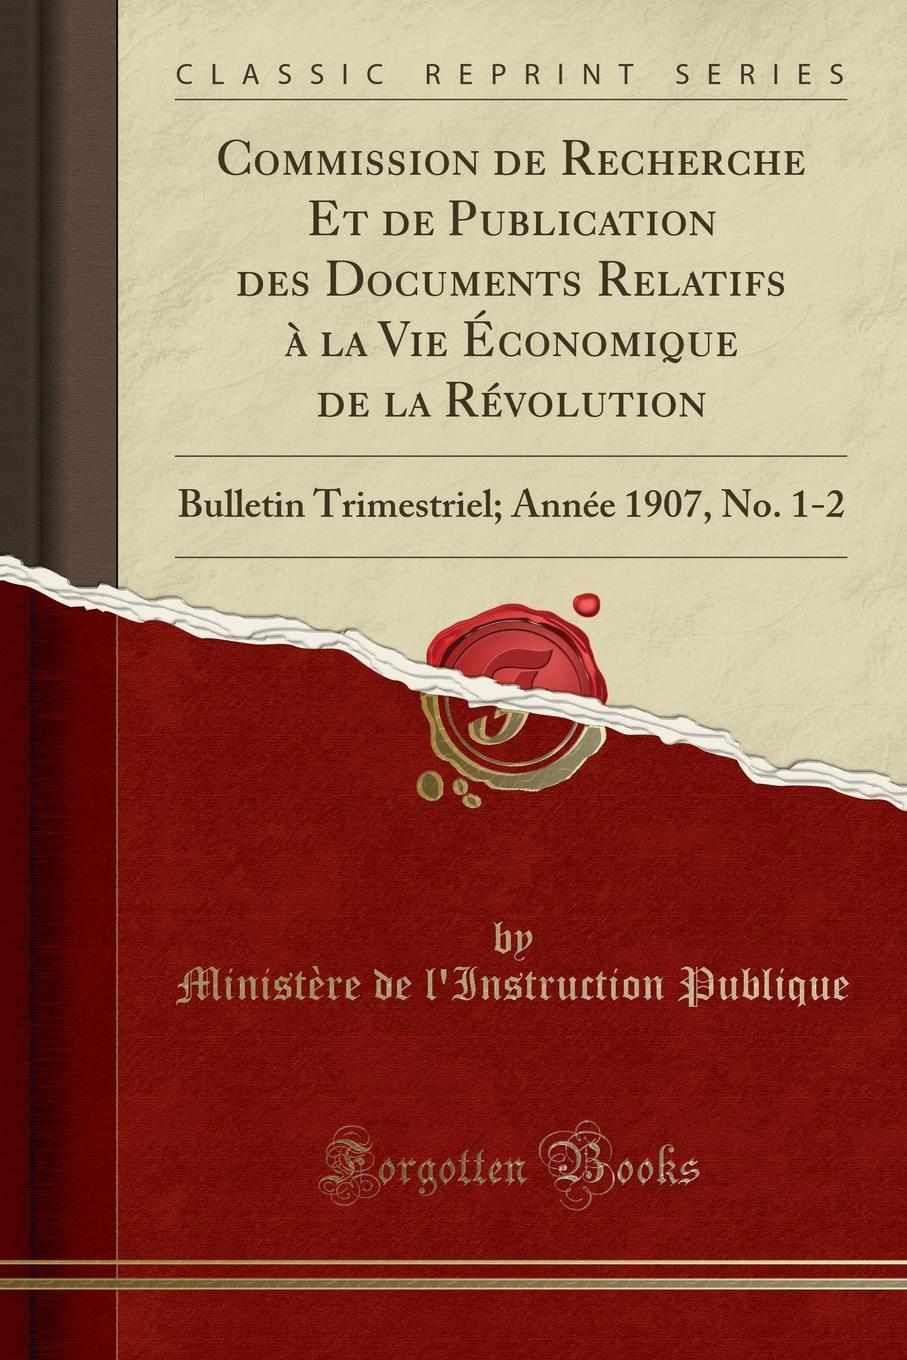 фото Commission de Recherche Et de Publication des Documents Relatifs a la Vie Economique de la Revolution. Bulletin Trimestriel; Annee 1907, No. 1-2 (Classic Reprint)